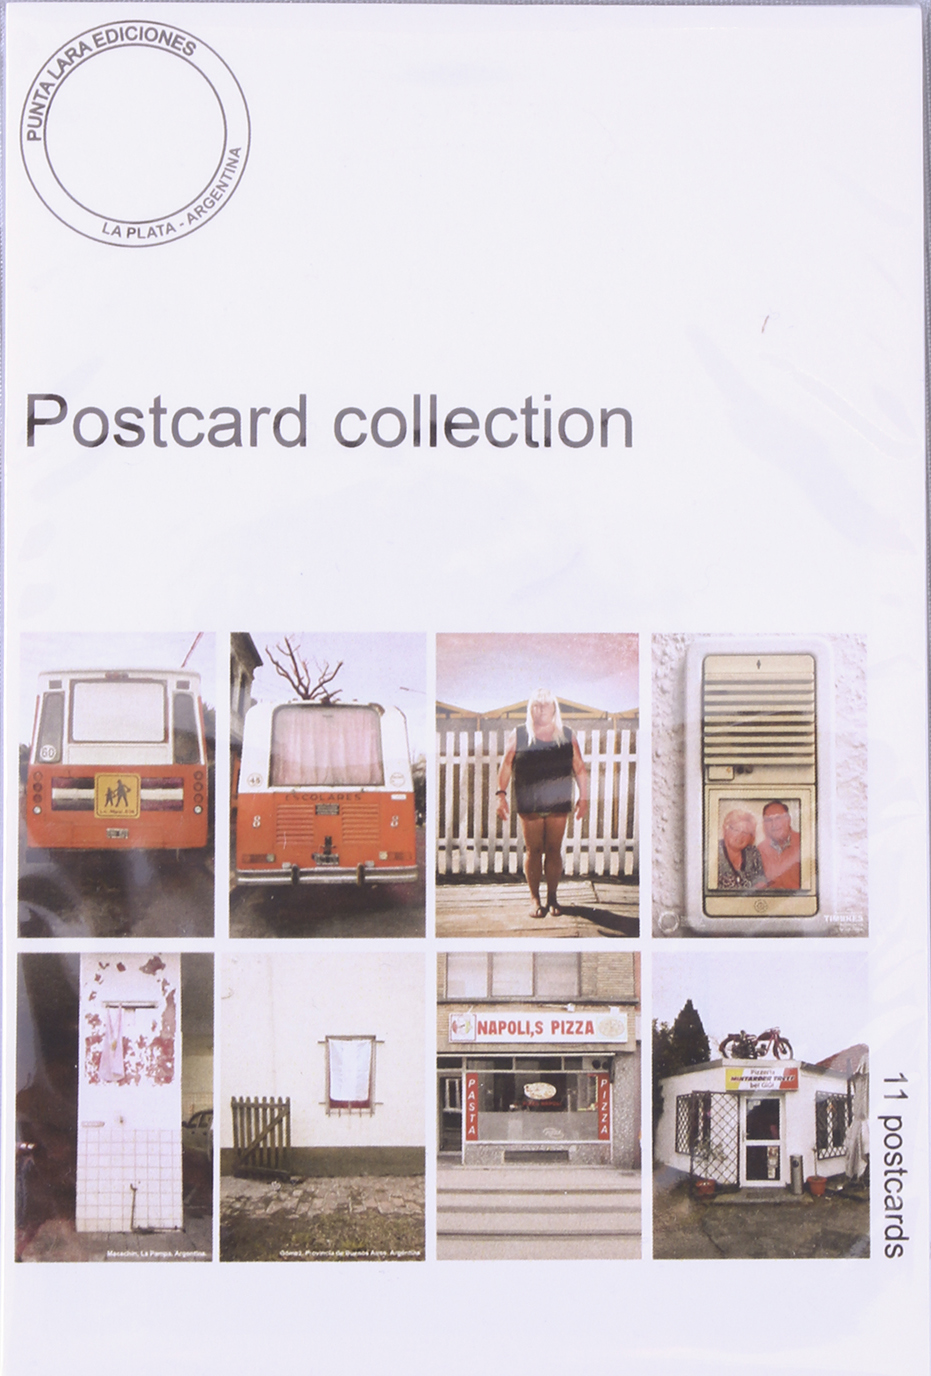 Punta Lara´s postcard collection